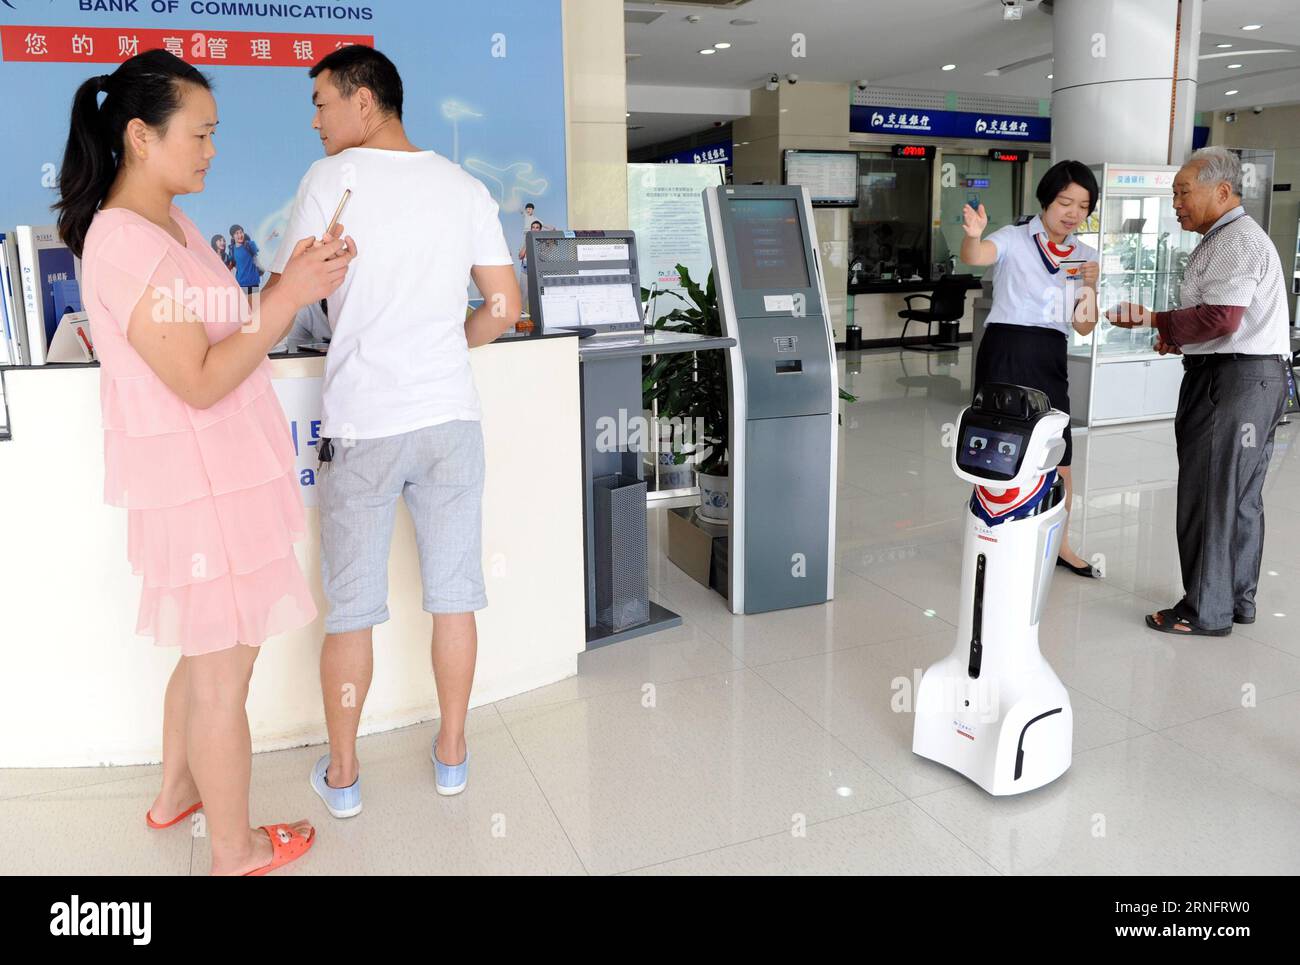 (160822) -- DONGYANG, 22 agosto 2016 -- il robot jiaojiao saluta i clienti in una filiale della Bank of Communications a Dongyang, nella provincia di Zhejiang nella Cina orientale, 22 agosto 2016. Il robot è in grado di assistere i clienti nella consulenza con il modulo di riconoscimento vocale. )(mcg) CHINA-ZHEJIANG-DONGYANG-BANK-ROBOT (CN) BaoxKangxuan PUBLICATIONxNOTxINxCHN 160822 Dong Yang 22 agosto 2016 il robot Jiaojiao accoglie i clienti PRESSO una filiale della Banca delle comunicazioni di Dong Yang nella provincia dello Zhejiang 22 agosto 2016 il robot È in grado di assistere i clienti nella consulenza con i suoi moduli di riconoscimento vocale MCG Cina Foto Stock